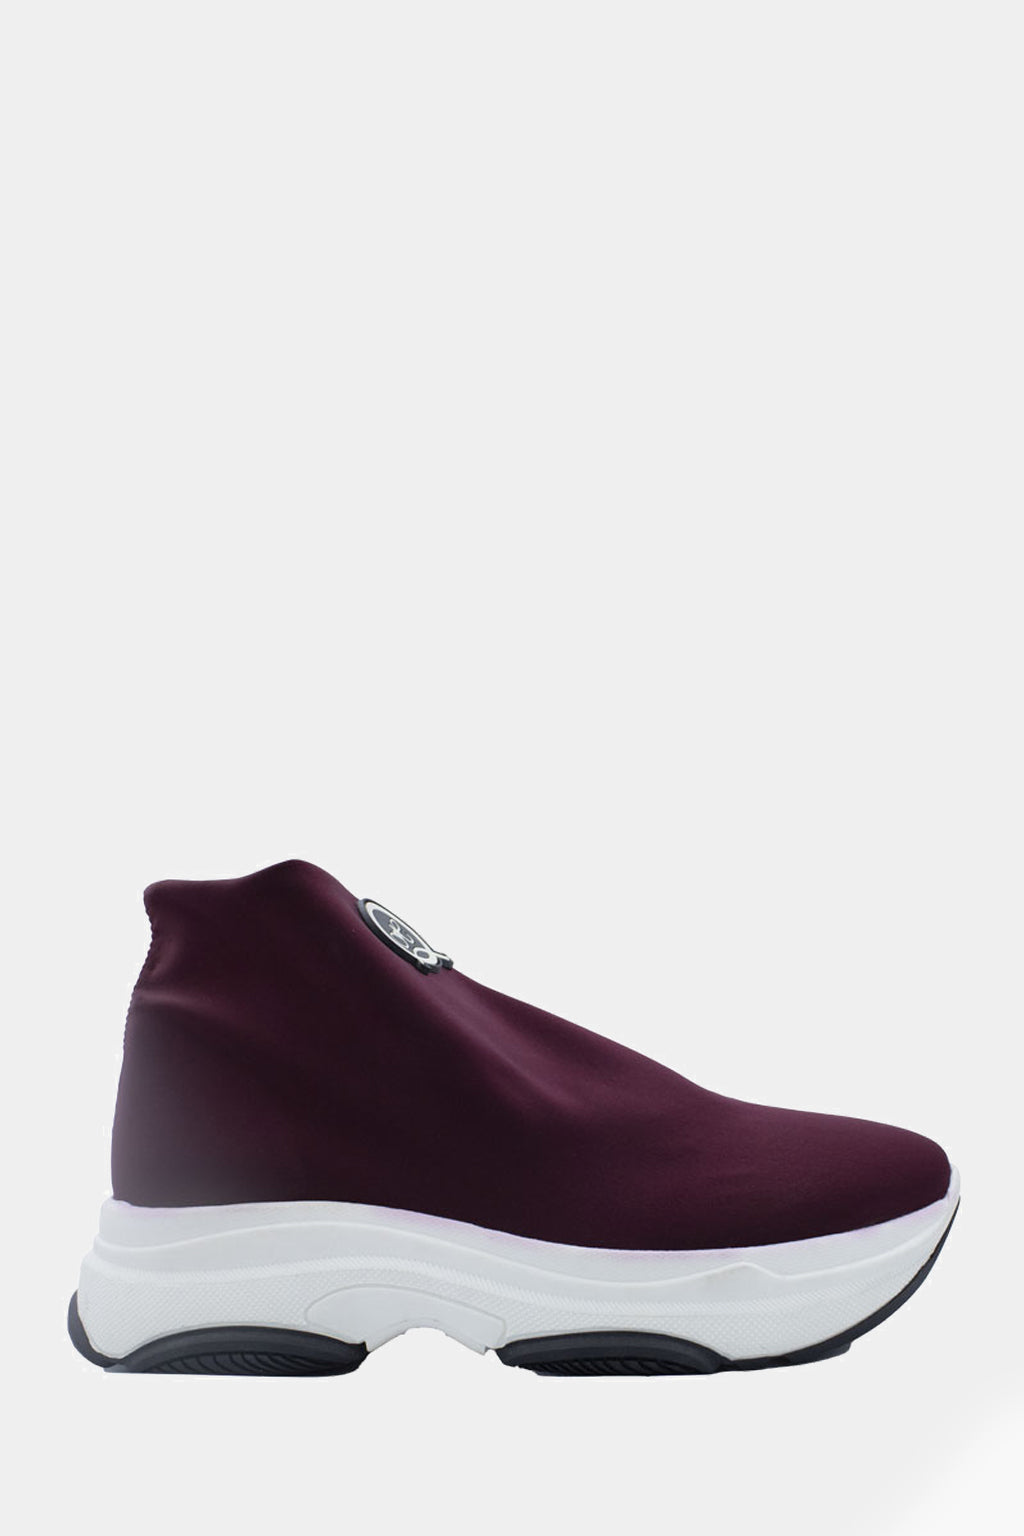 Queen Helena - Sneakers – Qh18204 Bor